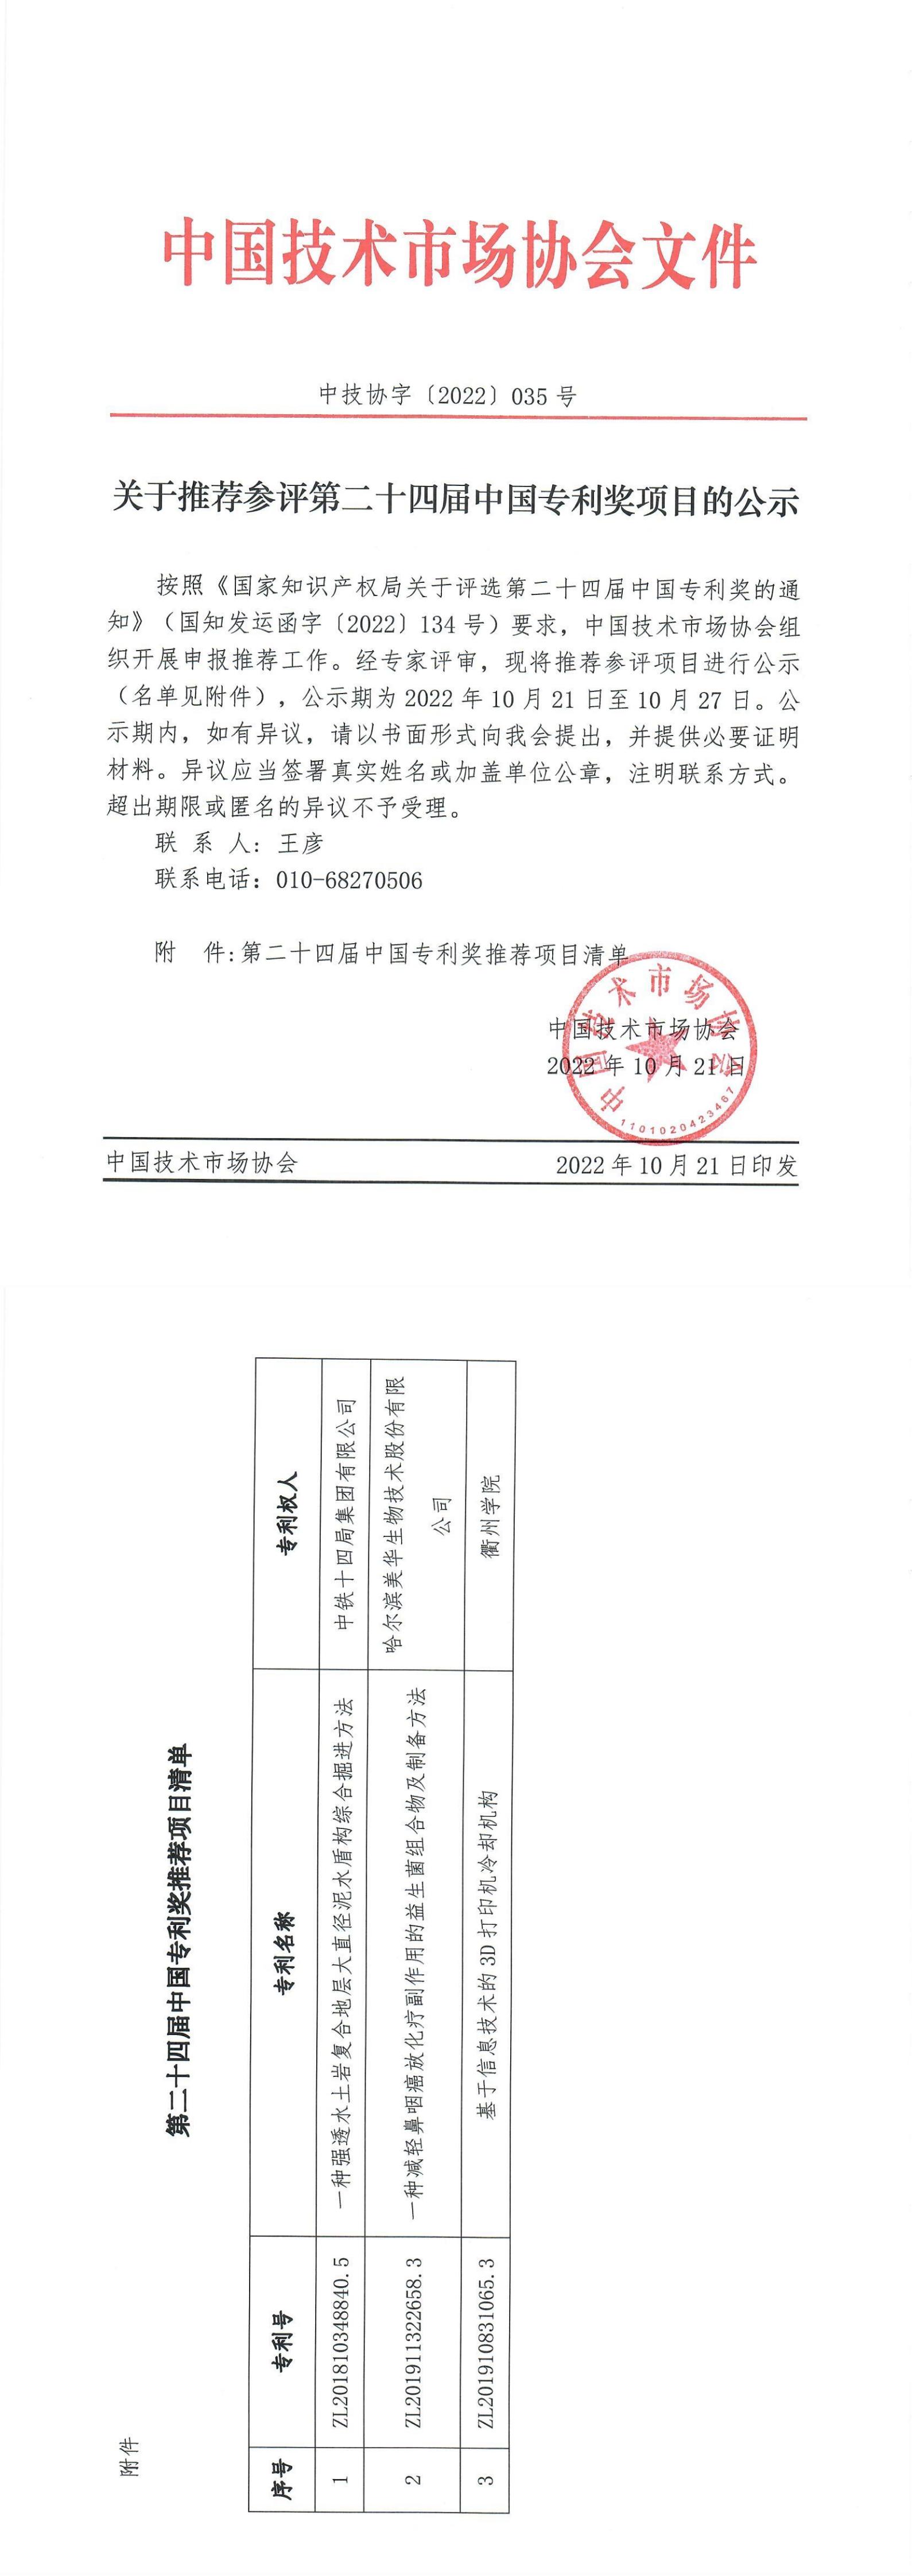 关于推荐参评第二十四届中国专利奖项目的公示_00.jpg